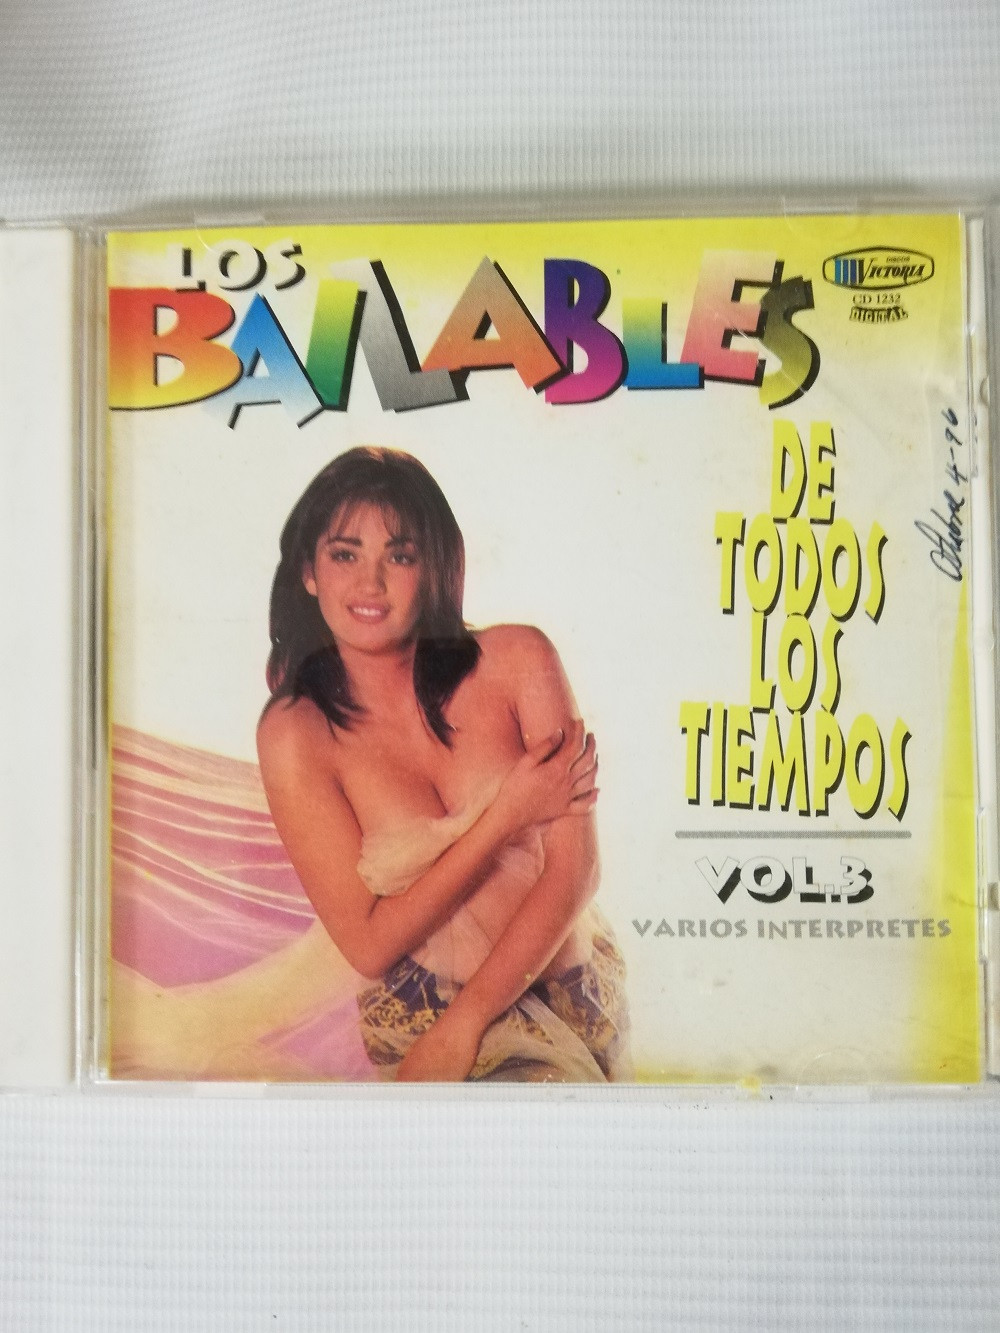 Imagen CD LOS BAILABLES DE TODOS LOS TIEMPOS VOL. 3 - VARIOS INTÉRPRETES 1